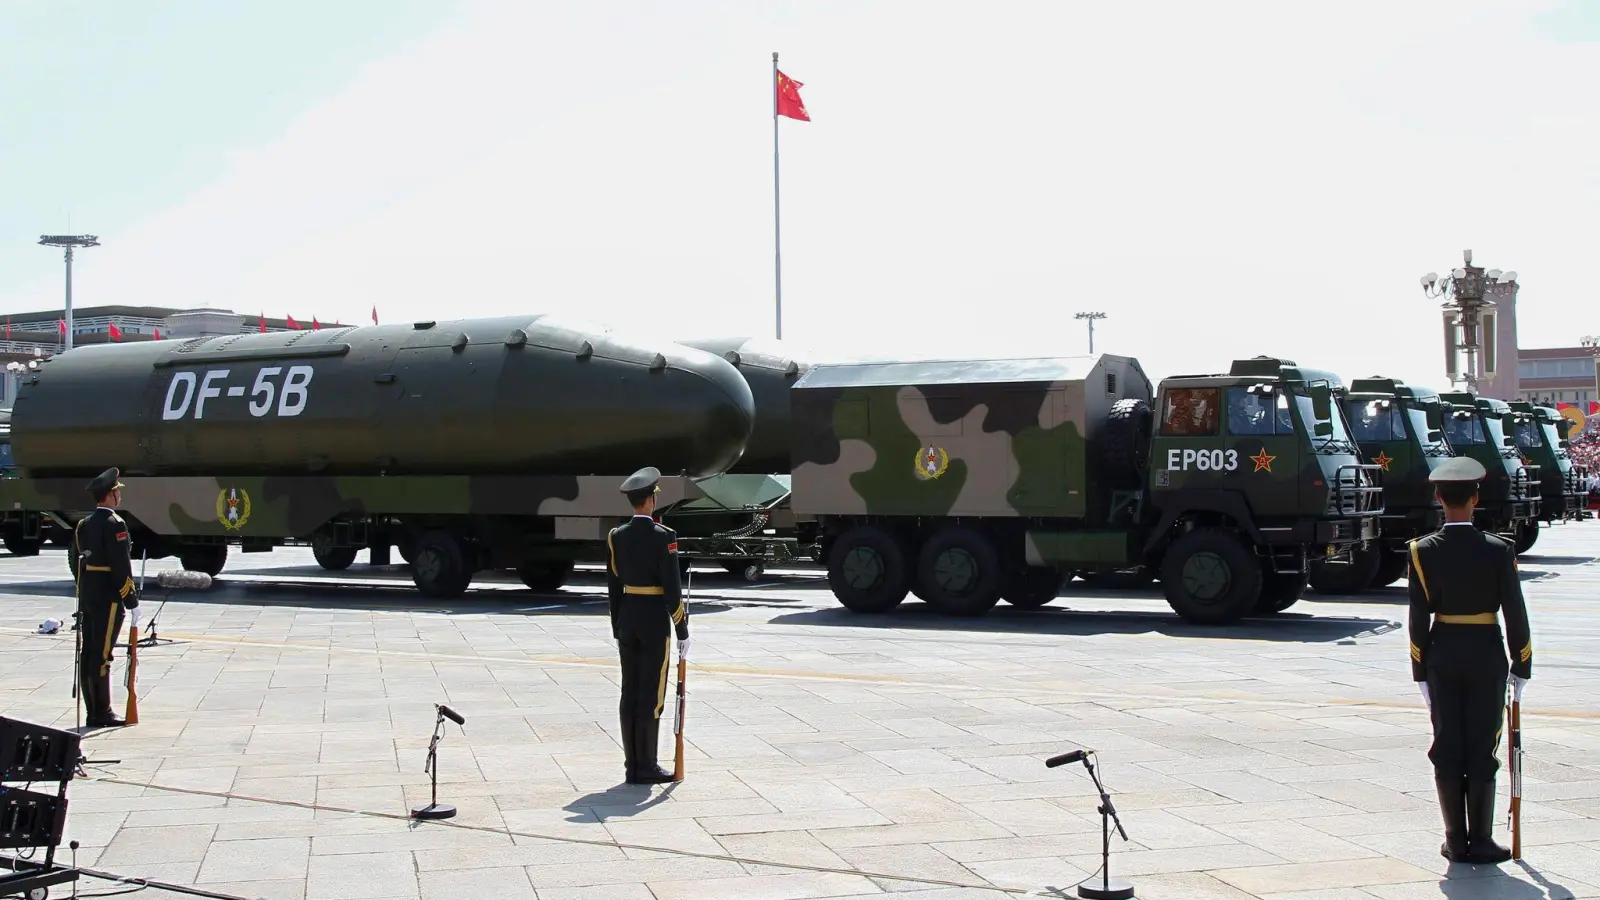 Chinesische Atomraketen Raketen des Typs Dongfeng-5B werden während einer Militärparade in Peking präsentiert (Archivbild). (Foto: Rolex Dela Pena/EPA/dpa)